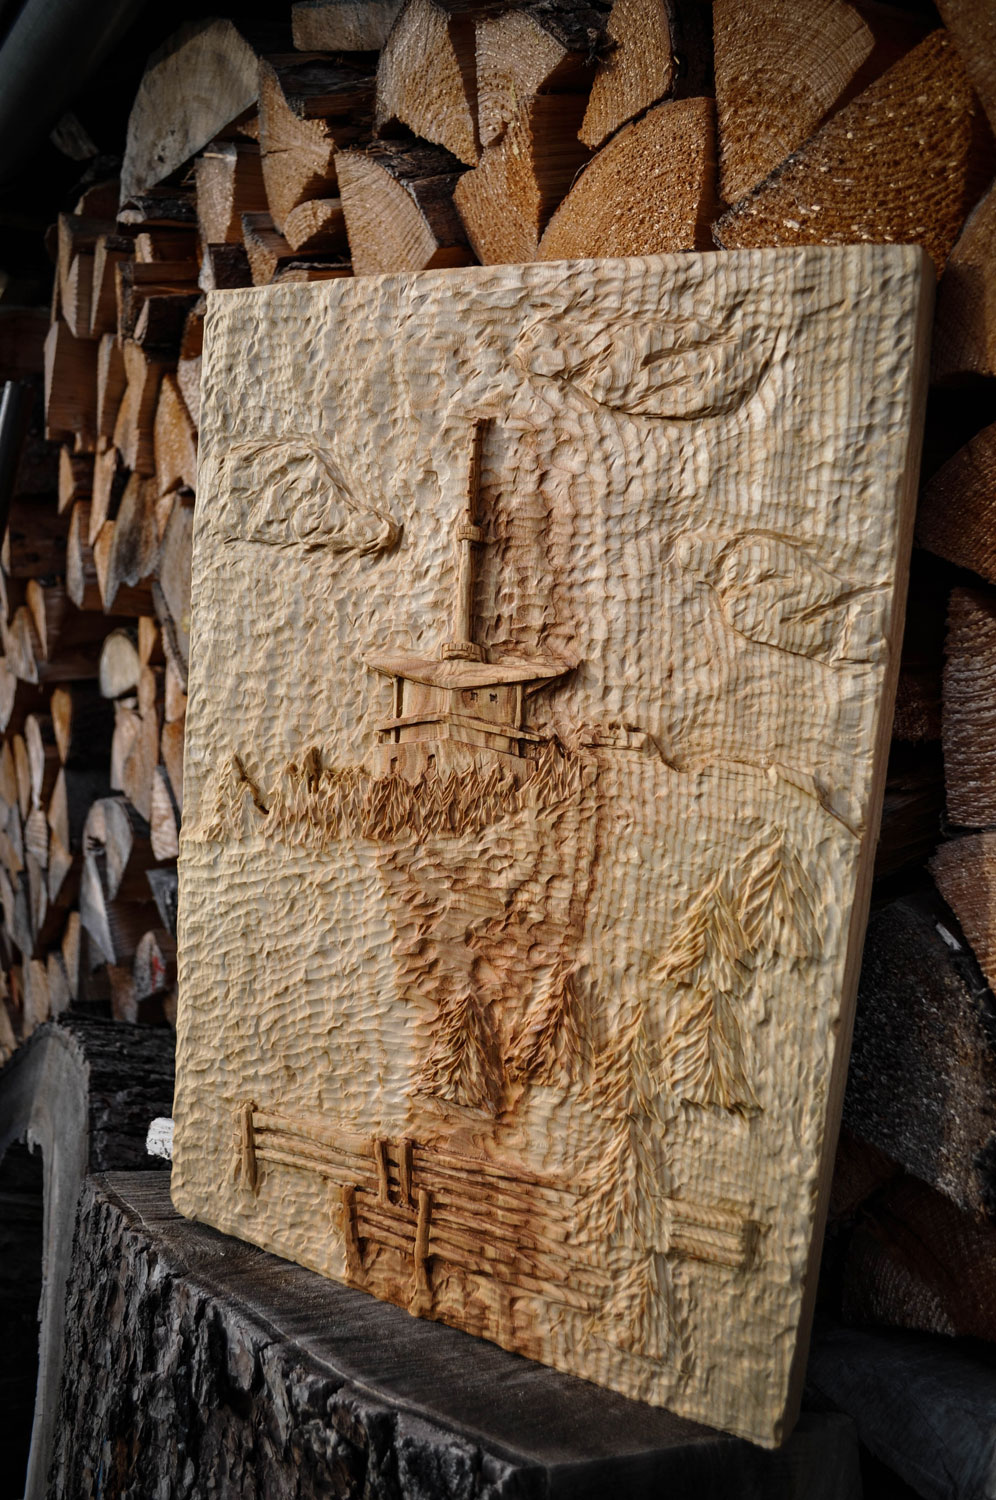 drevorezba-vyrezavani-carving-wood-drevo-socha-lysa-radekzdrazil-20211115-06